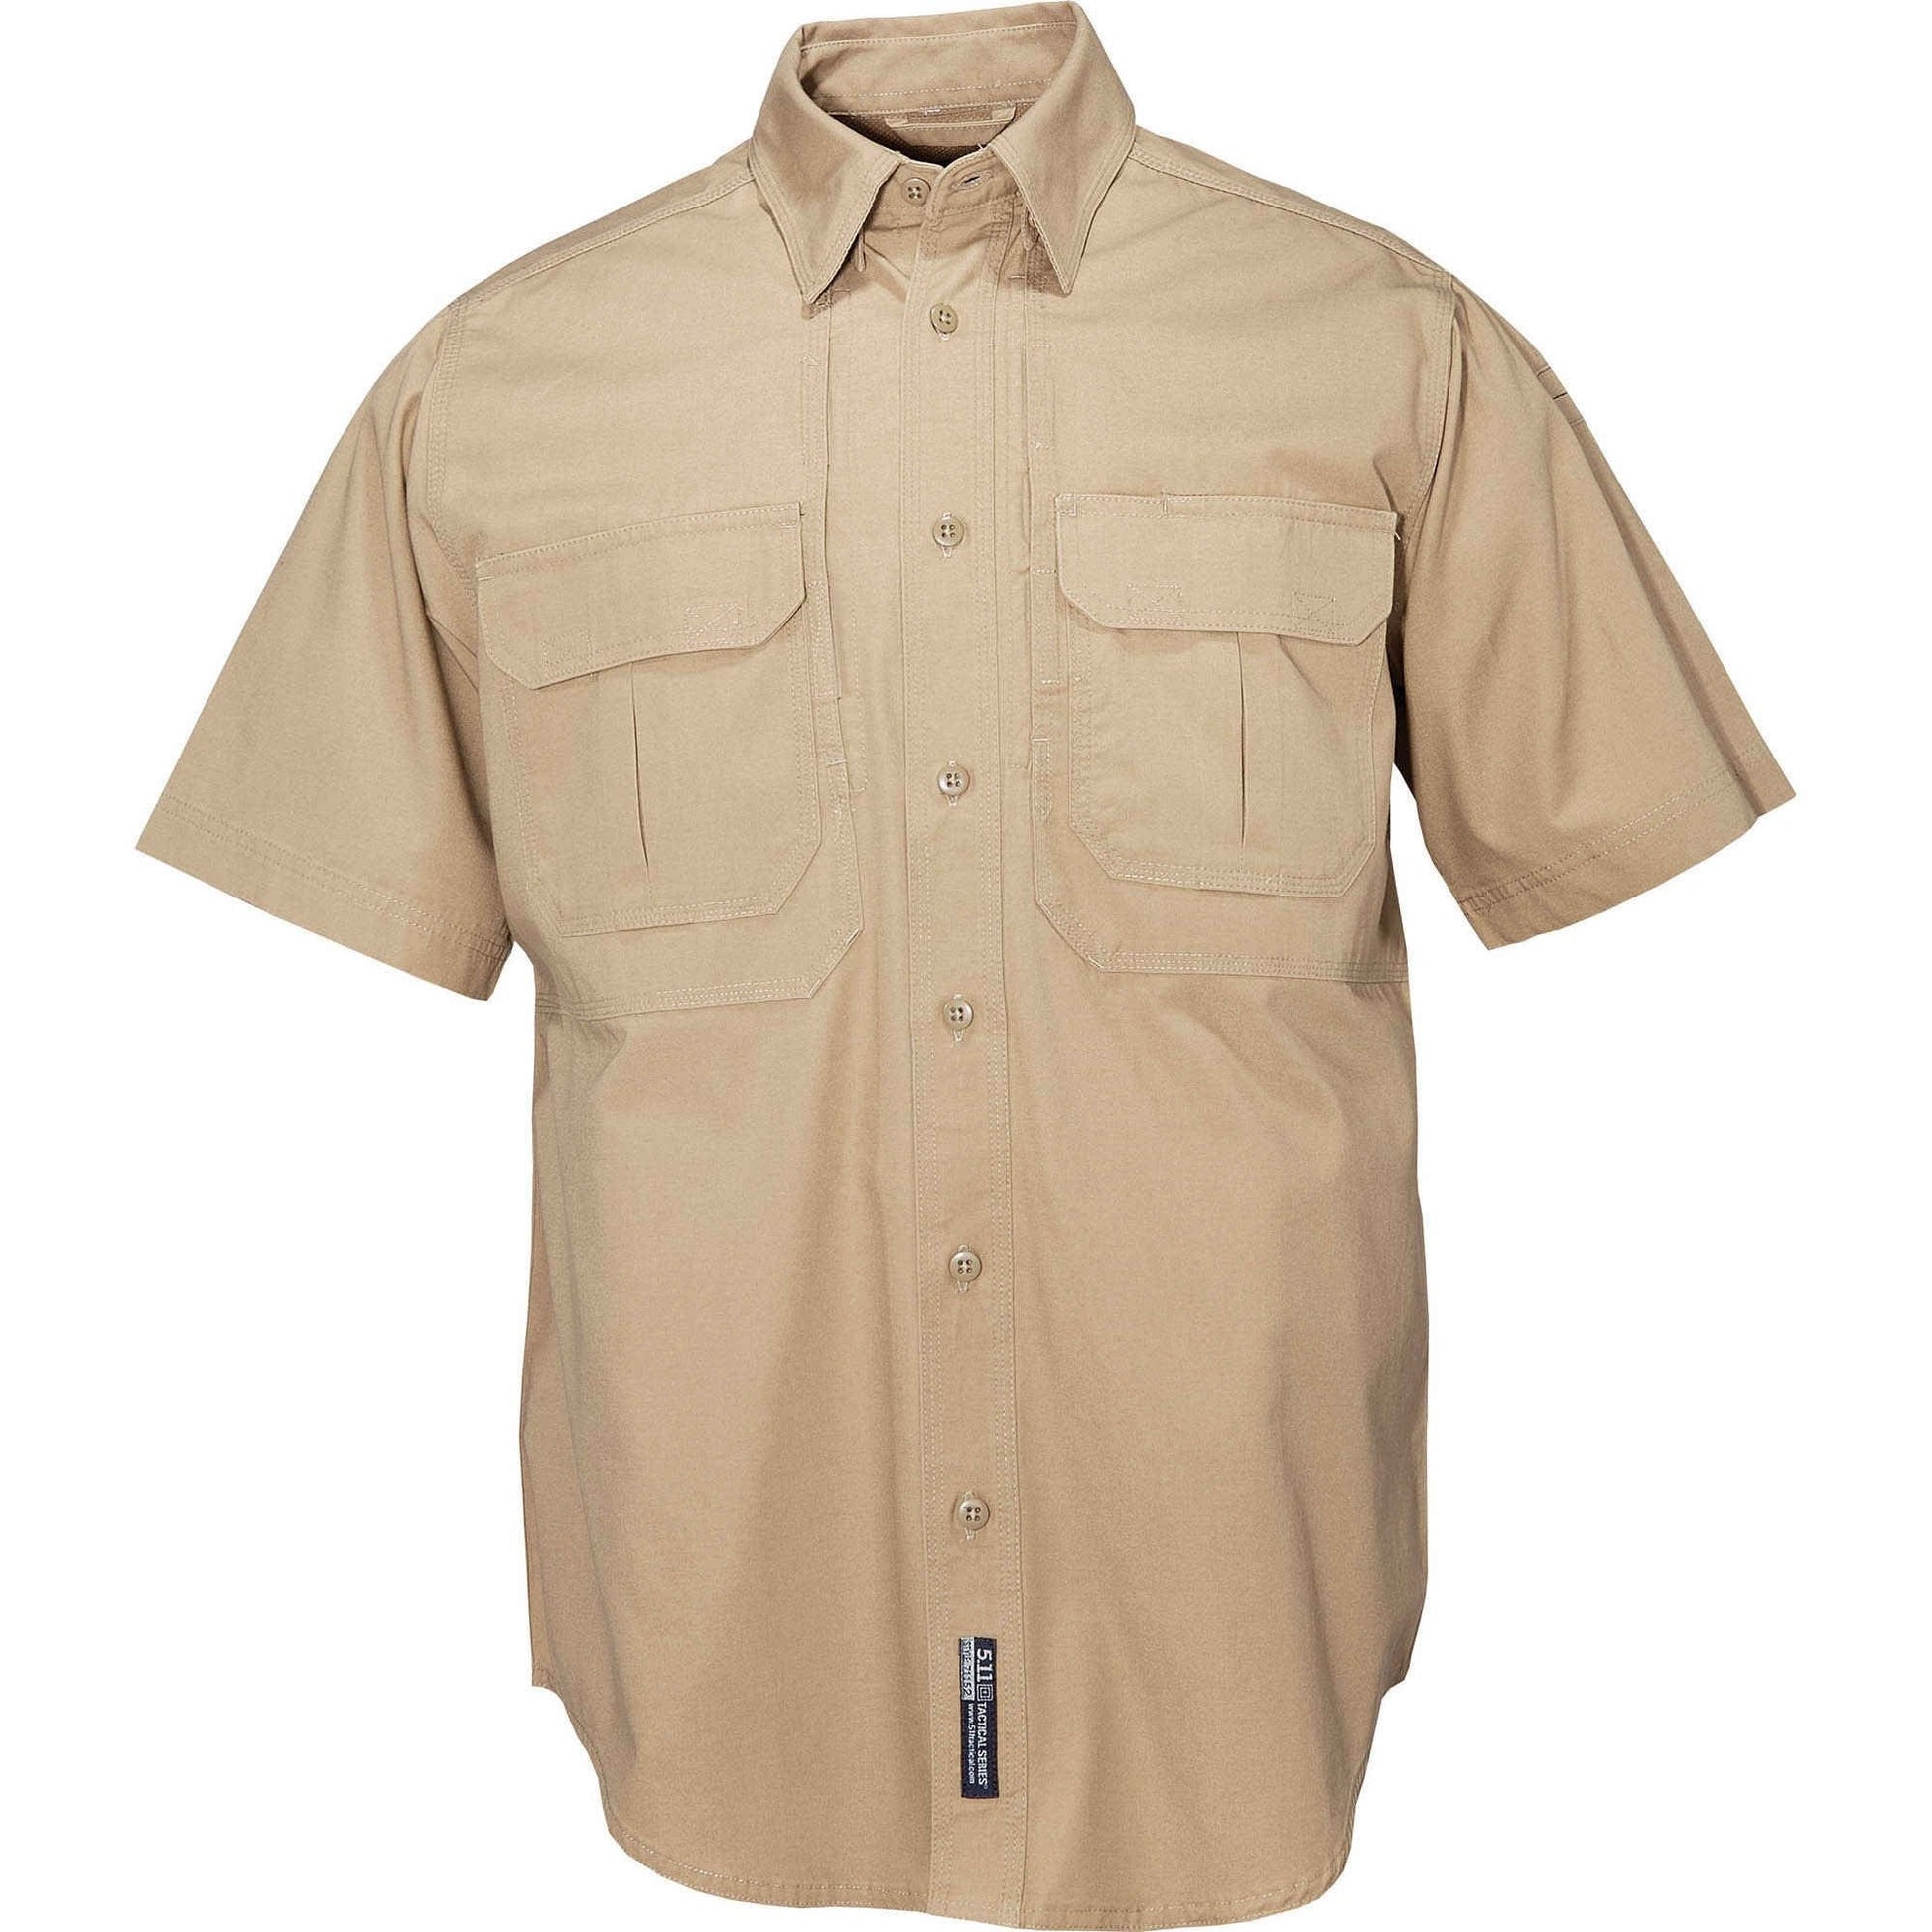 5.11 Tactical Men's Short Sleeve Tactical Shirt Coyote Tactical Distributors Ltd New Zealand